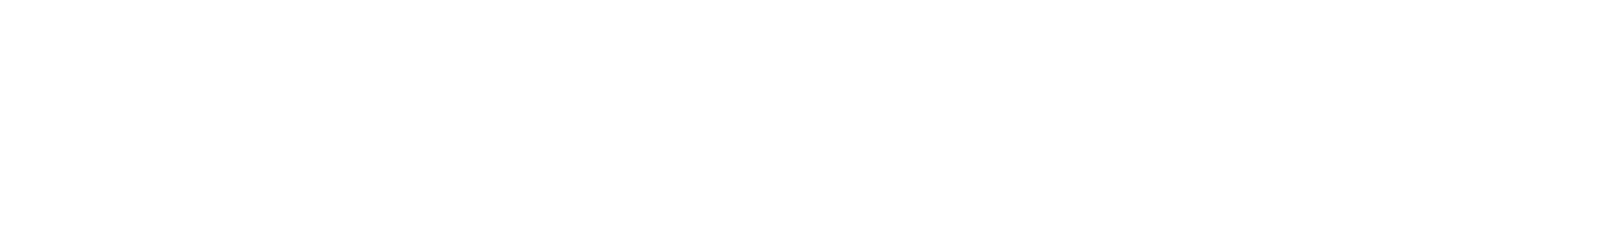 fiveStars